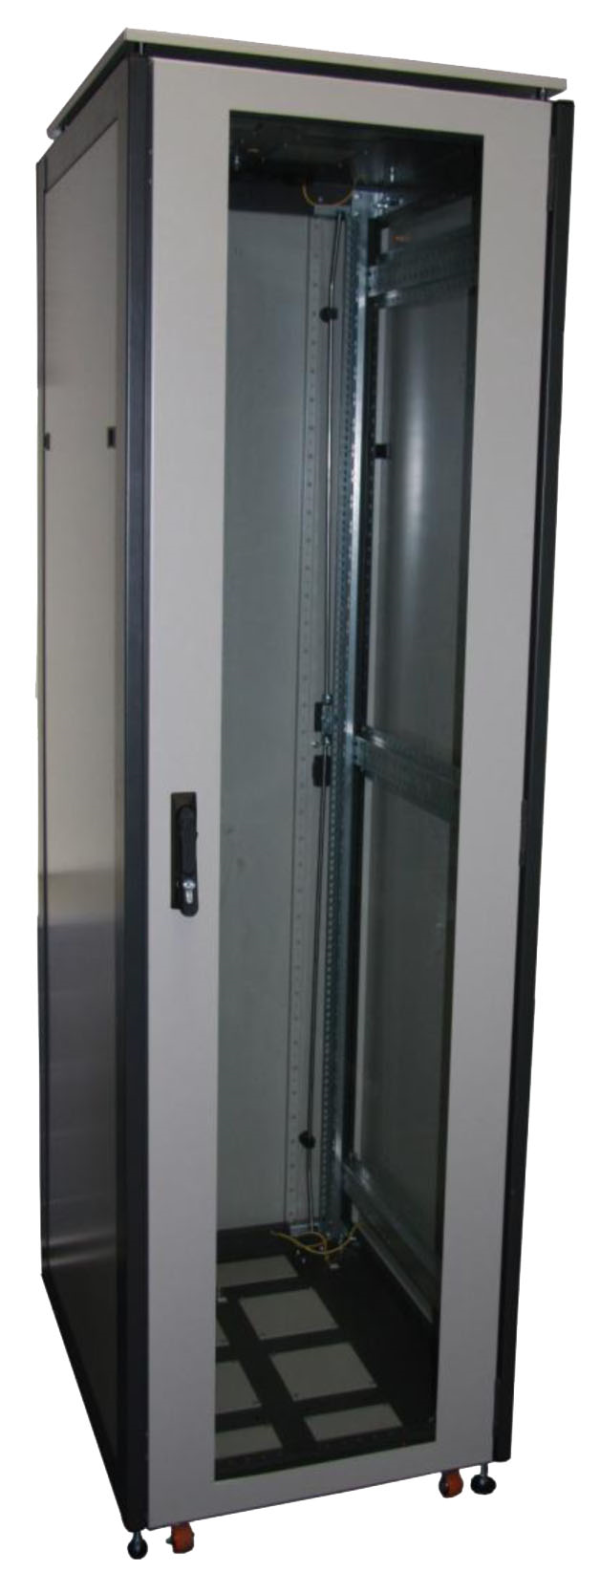 ССКТБ ТОМАСС ШТК-6822Э-00 - шкаф телекоммуникационный 19", 47U, 600х800х2200 мм, с металлической и стеклянной дверью